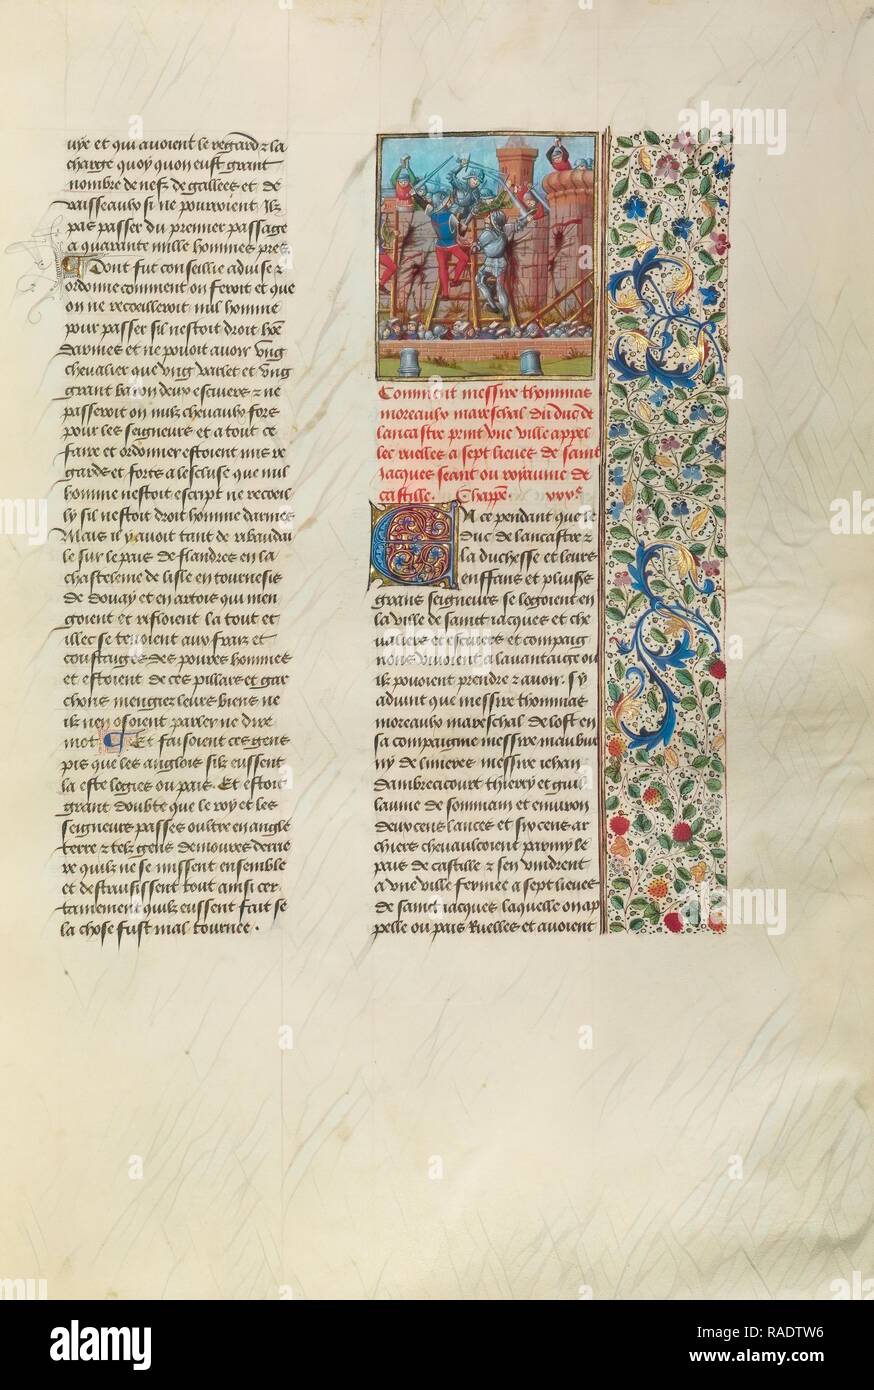 Thomas Moreaux, Marschall von Johannes von Gaunt, Kämpfe an Ruelles, Brügge, Belgien, um 1480 - 1483, Tempera Farben neuerfundene Stockfoto